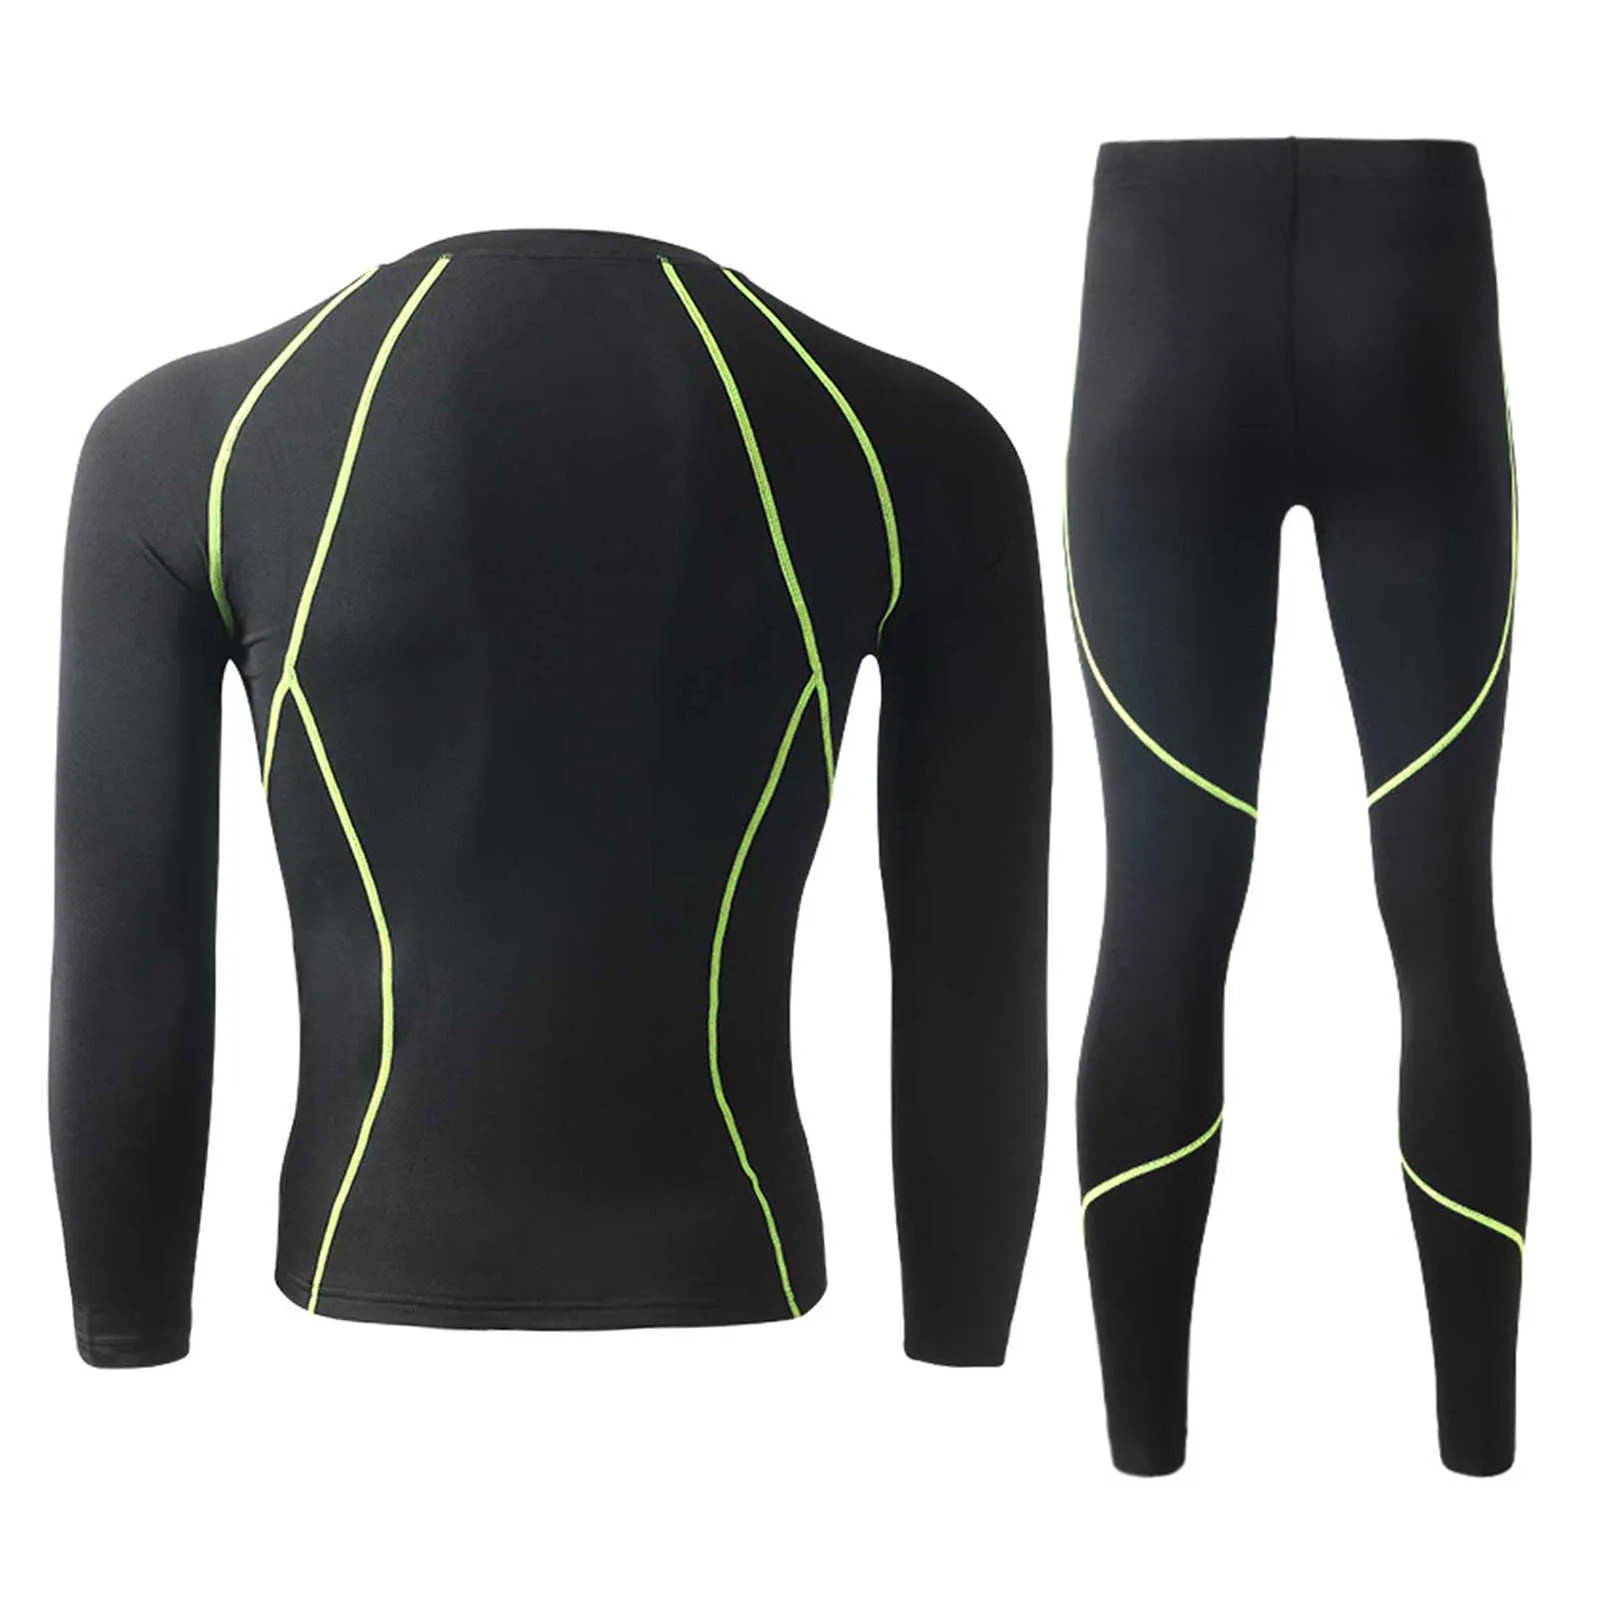 Winter Männer Thermo-unterwäsche Set Sweat Shirt Lange Unterhosen Bodycon Fit Atmungsaktive Lauf Skifahren Fitness Ausrüstung X0610